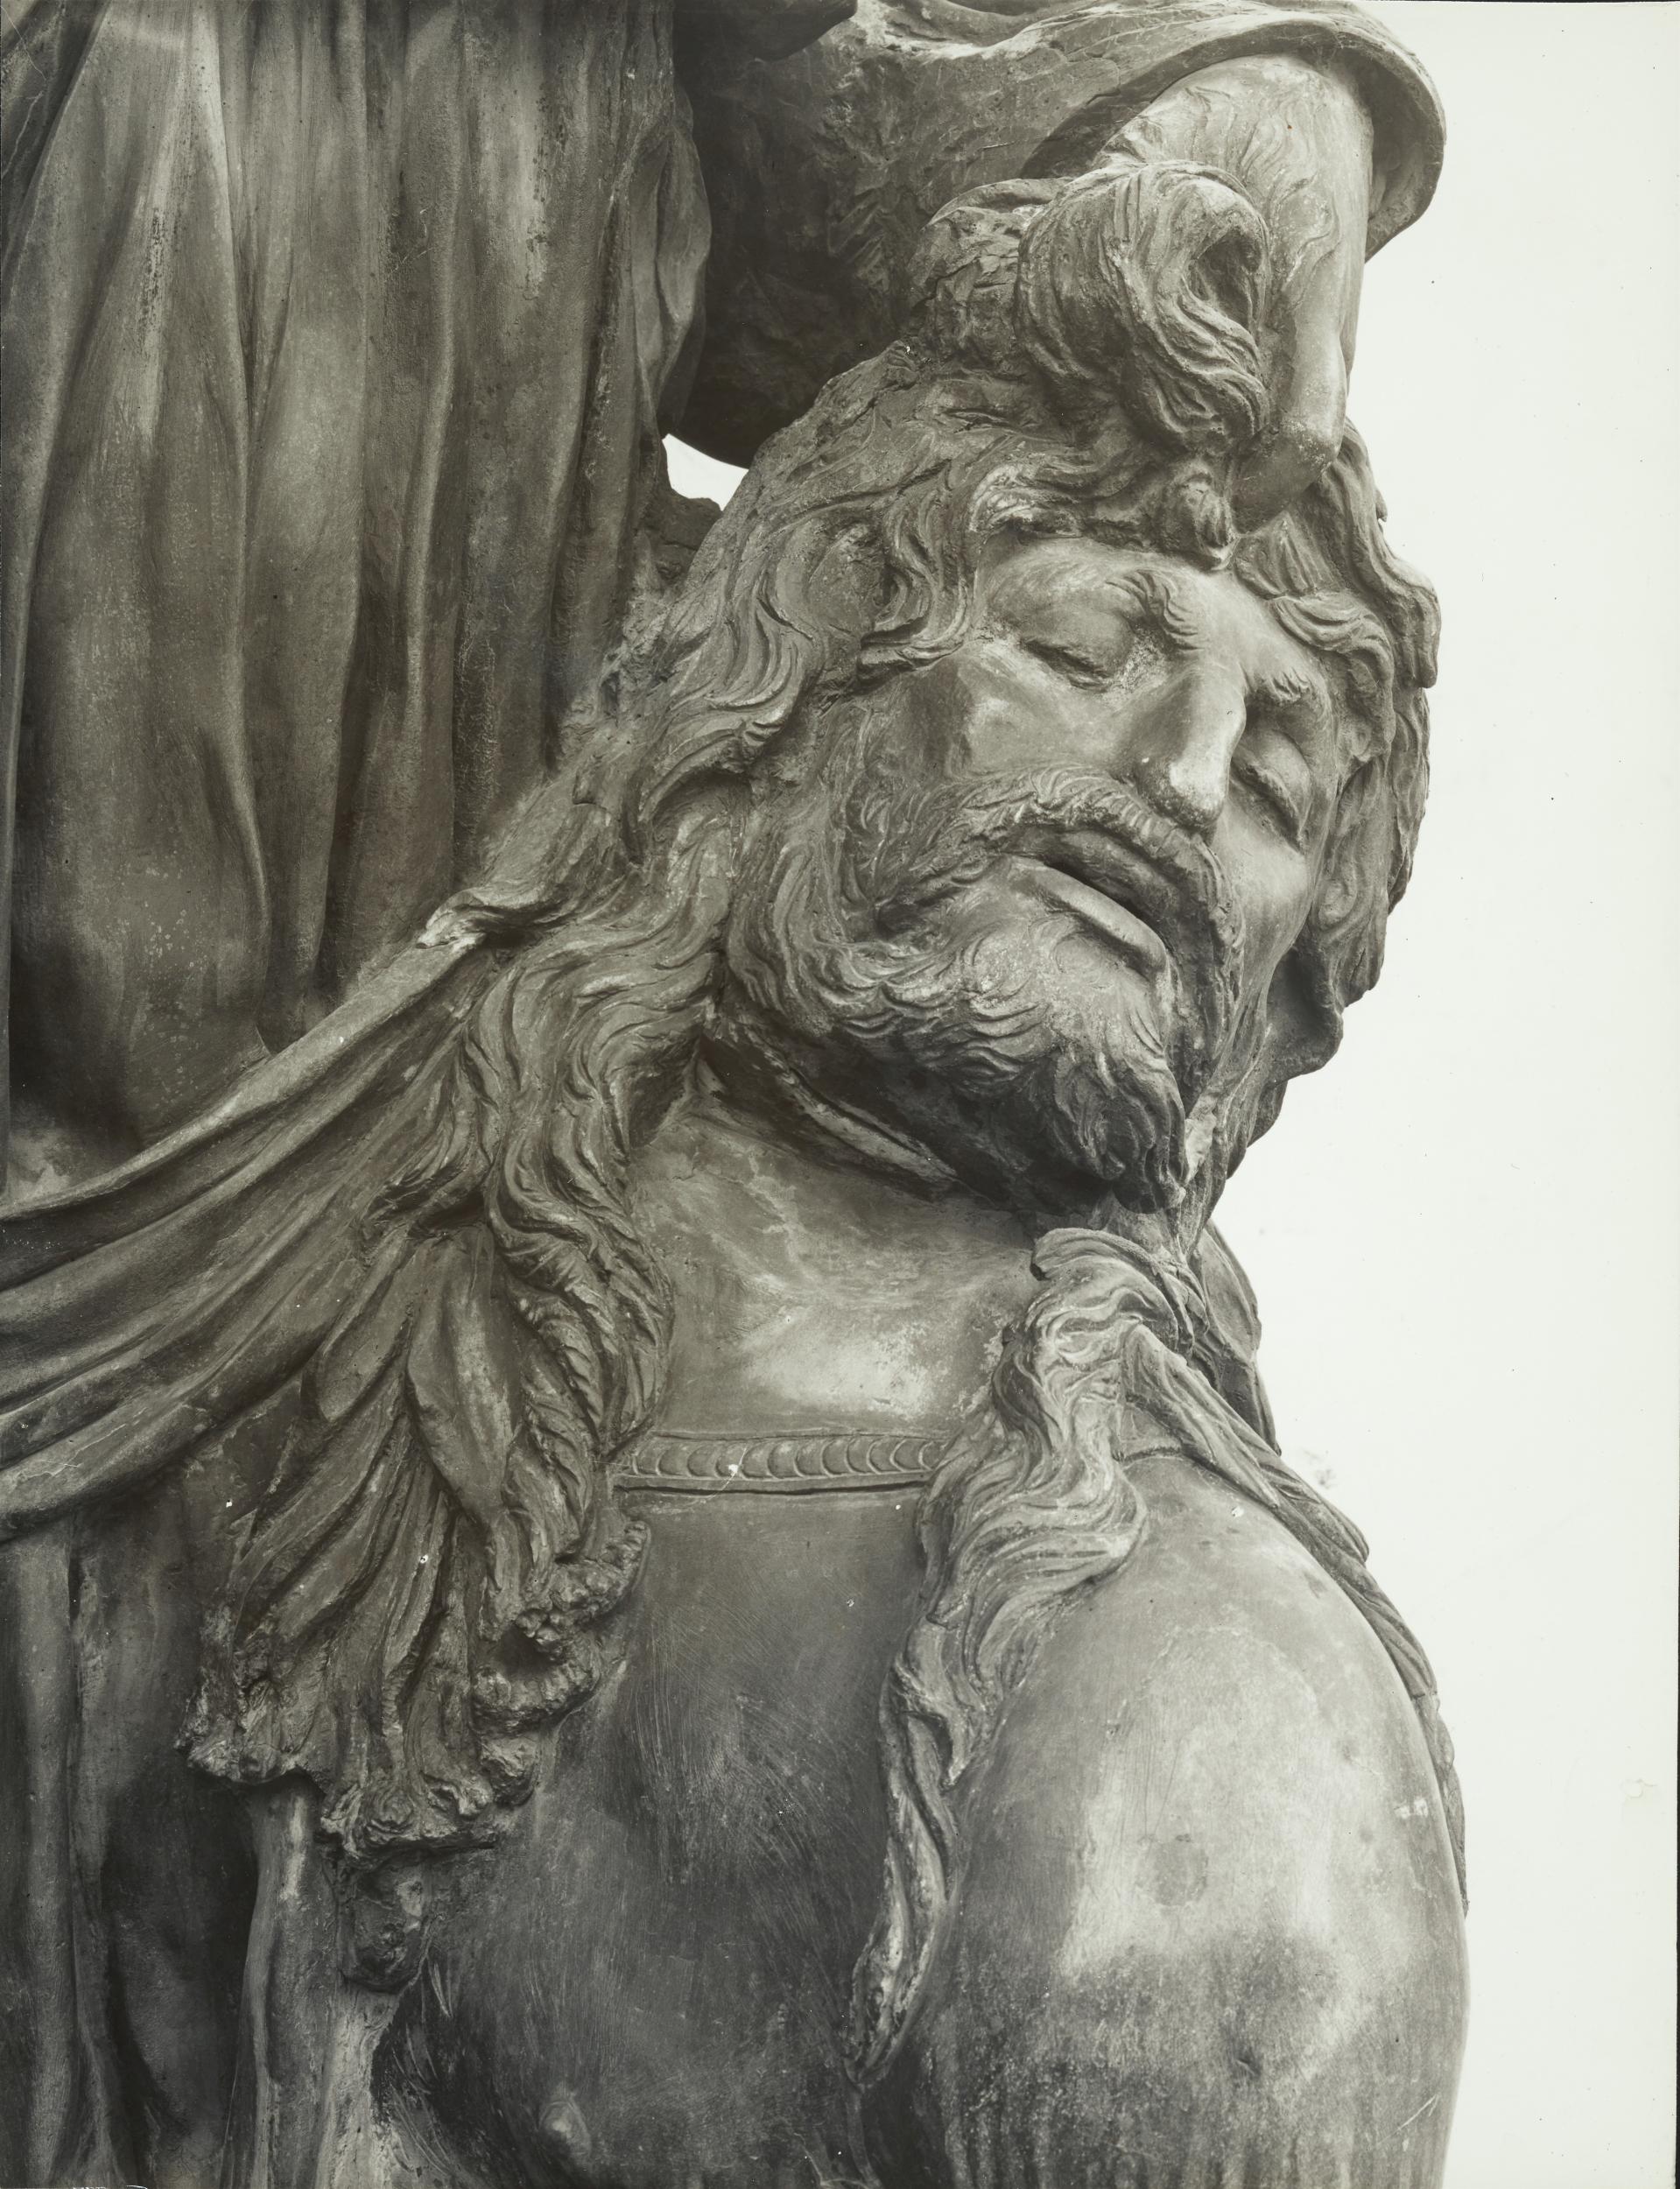 Gino Malenotti, Firenze - Piazza della Signoria, La Giuditta oggi a Palazzo Vecchio, la figura di Oloferne, 1931- 1938, gelatina ai sali d'argento, MPI6022146